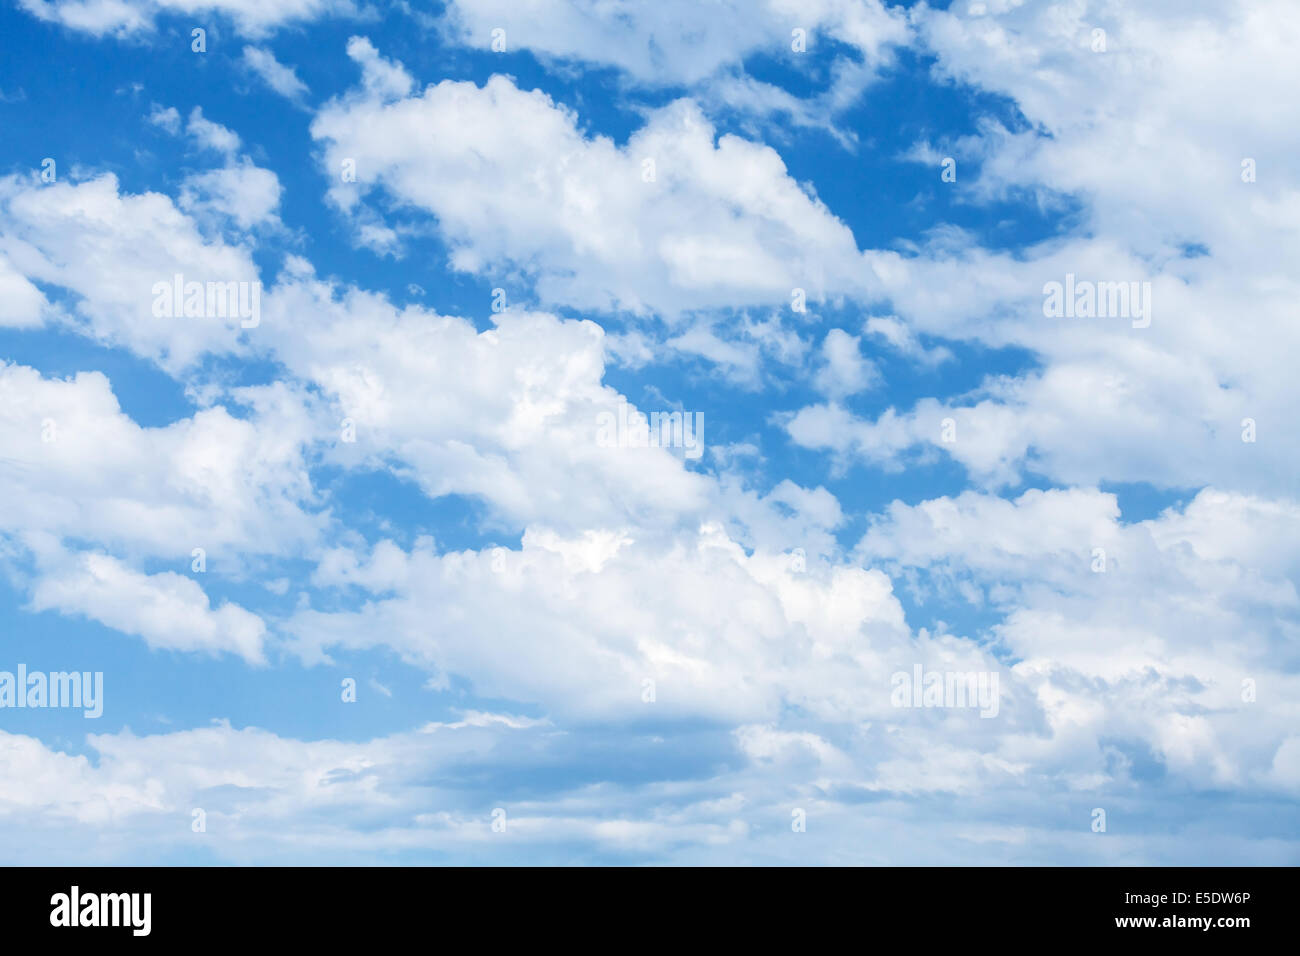 Strahlend blauer Himmel bewölkt Hintergrundtextur Foto Stockfoto